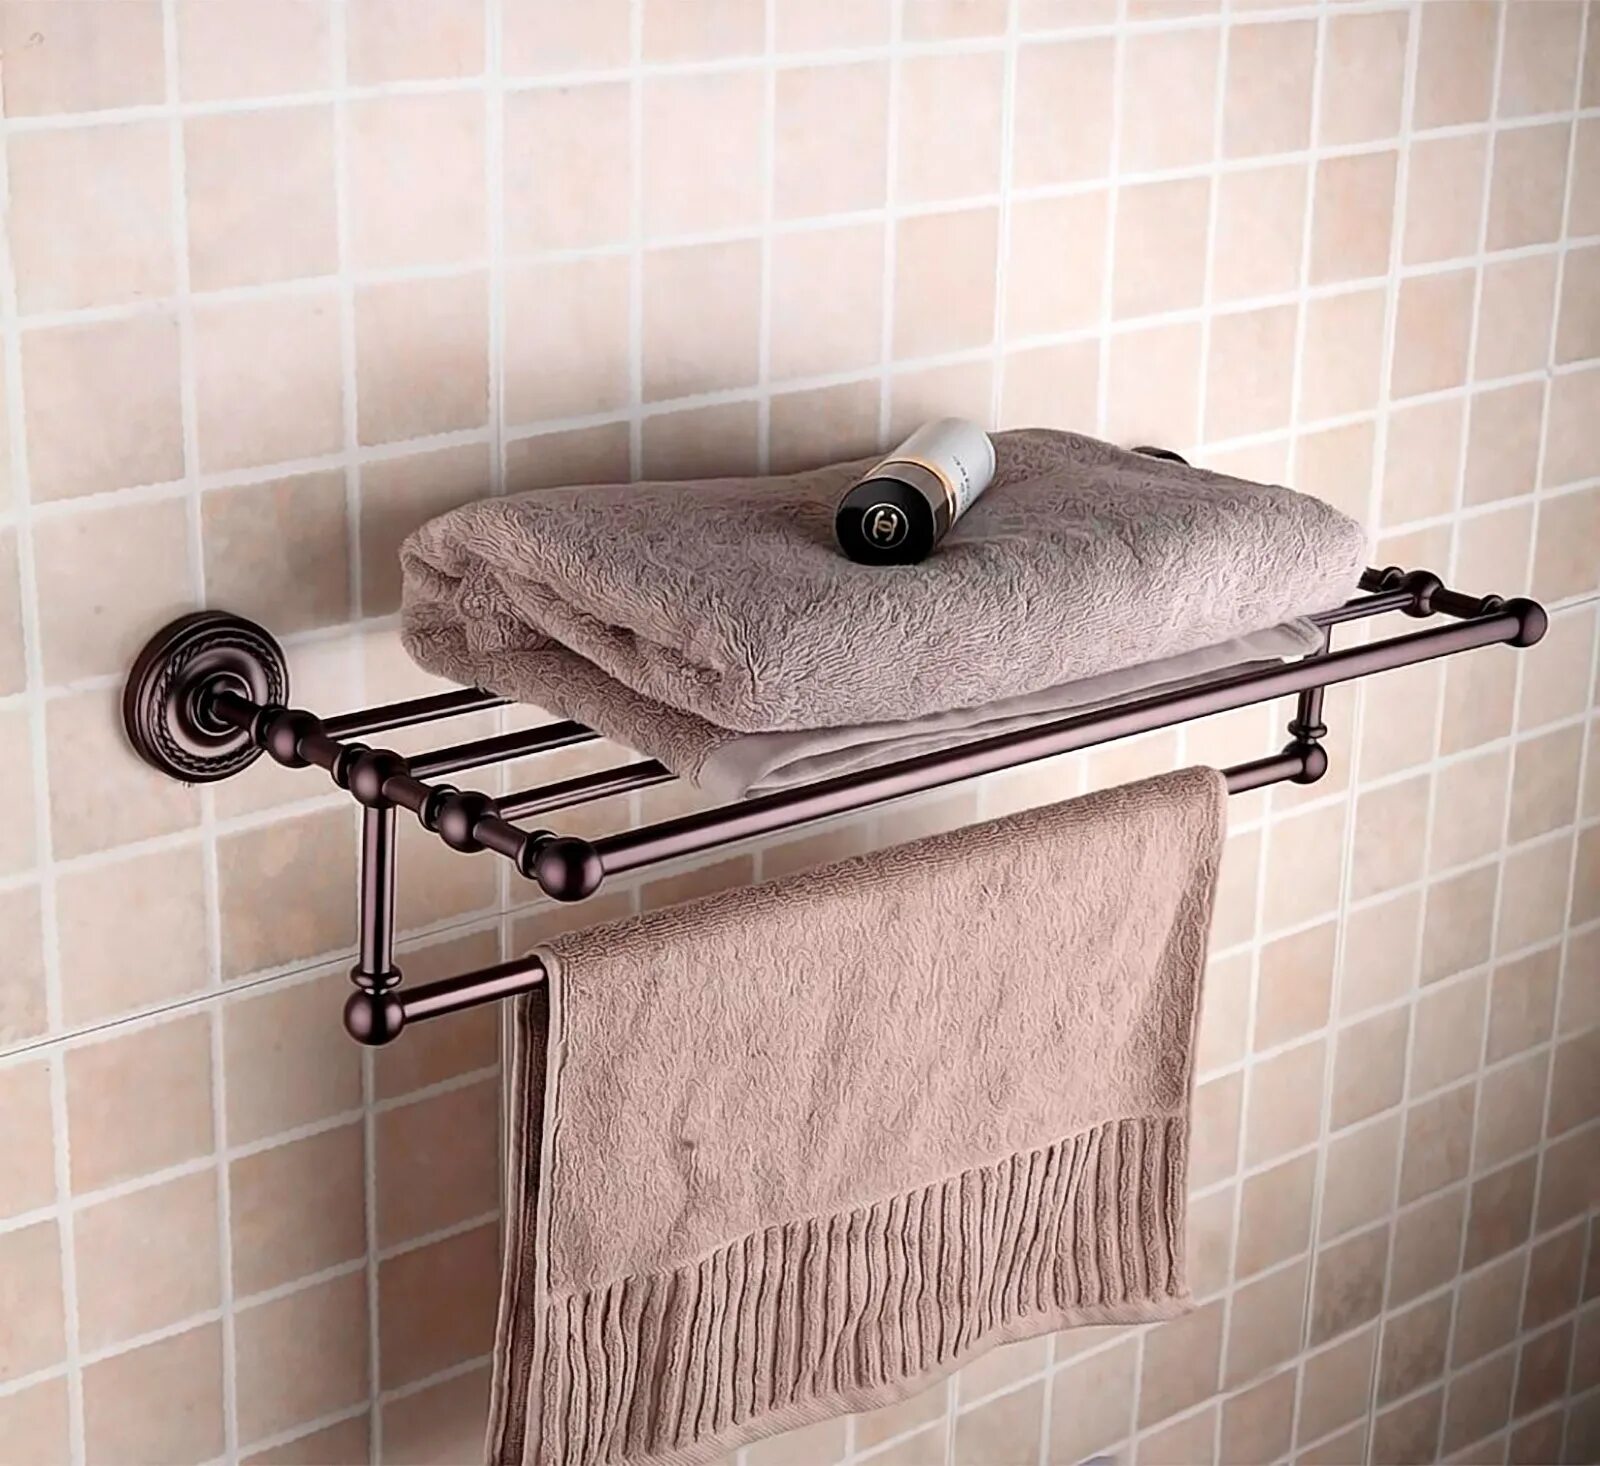 Как повесить полотенца в ванной. Полка для полотенец. Полотенце в ванной в интерьере. Полочка для полотенец в ванную комнату. Полотенцедержатели для ванной комнаты.